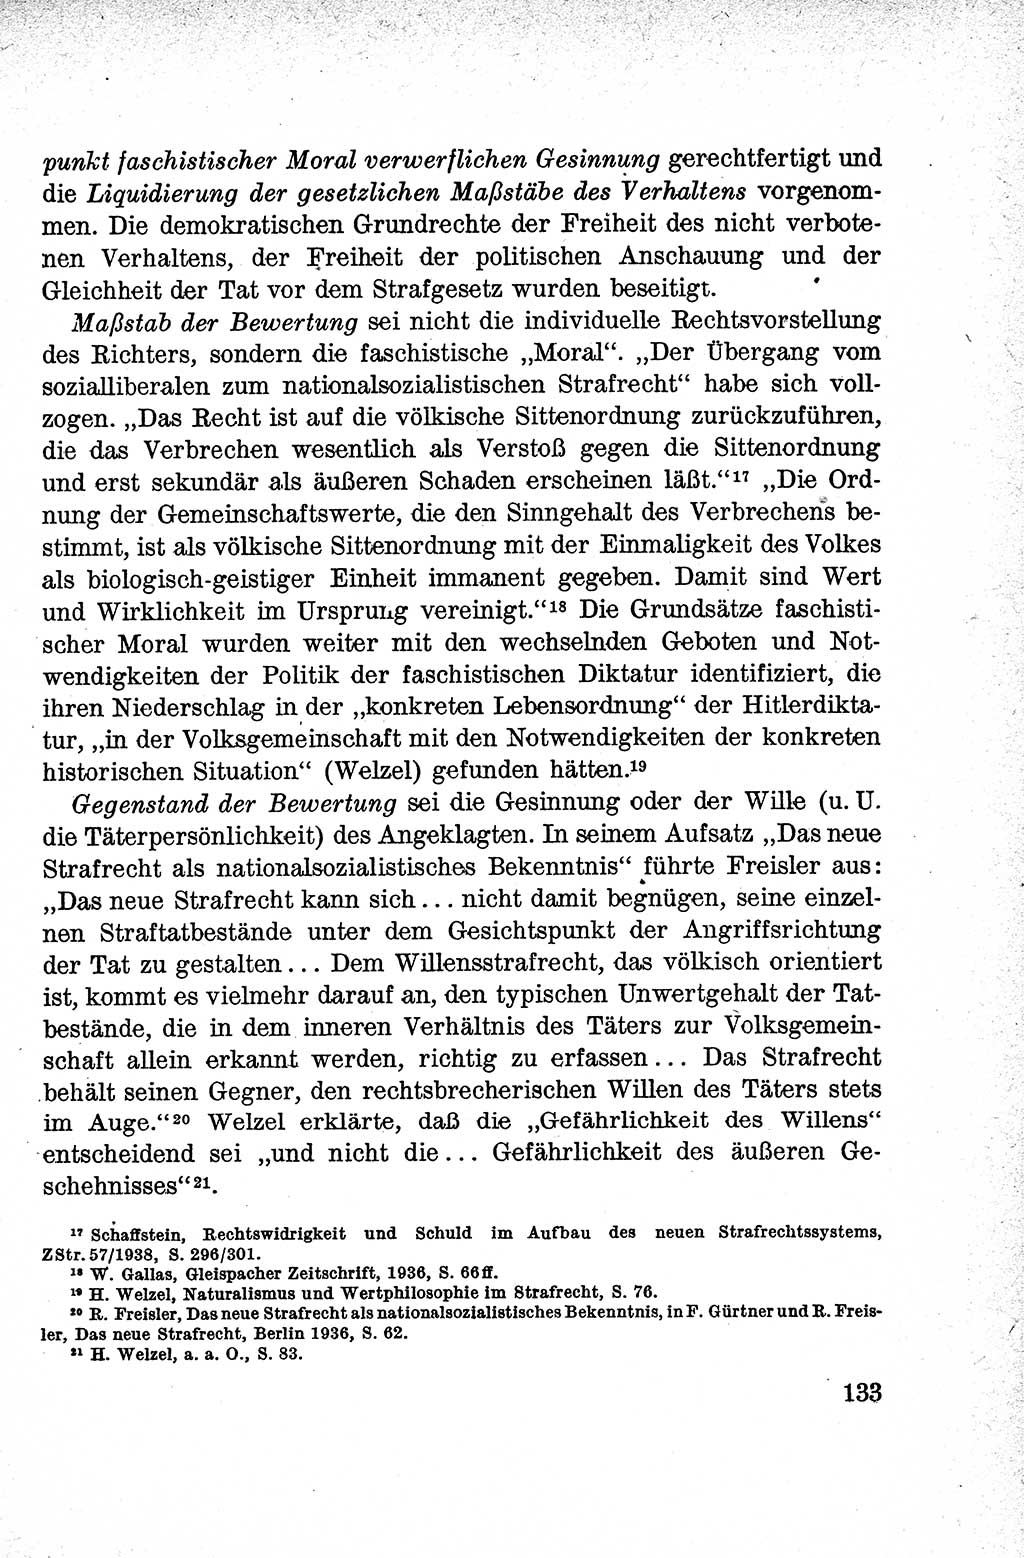 Lehrbuch des Strafrechts der Deutschen Demokratischen Republik (DDR), Allgemeiner Teil 1959, Seite 133 (Lb. Strafr. DDR AT 1959, S. 133)